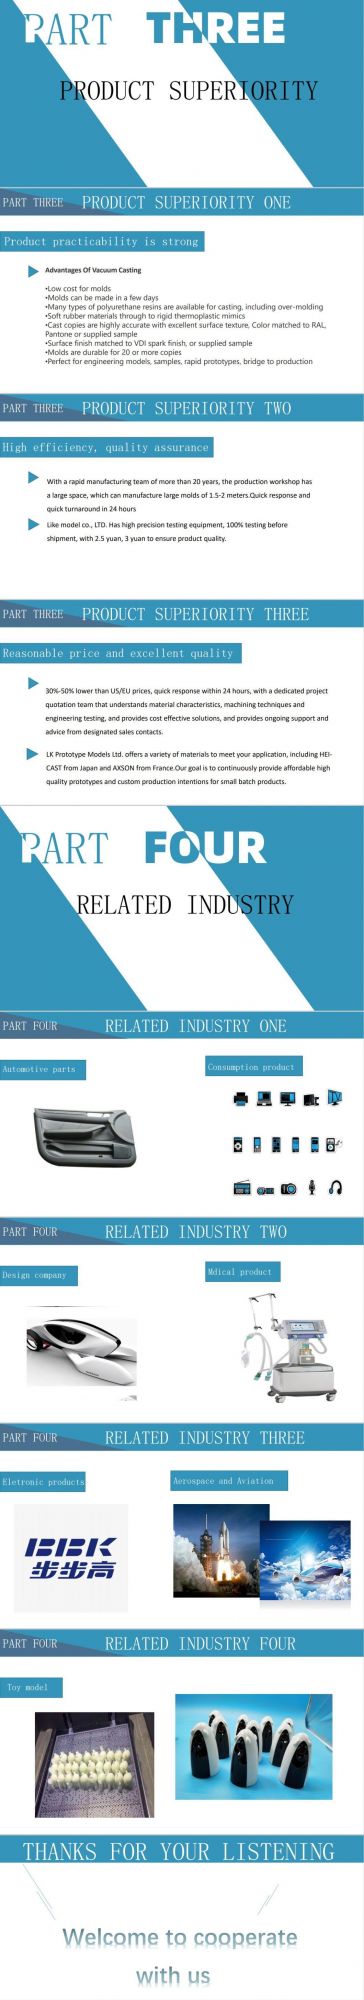 Custom Precision Aluminum Parts Exact Specification Rapid Prototype/CNC Machining/Aluminum Parts